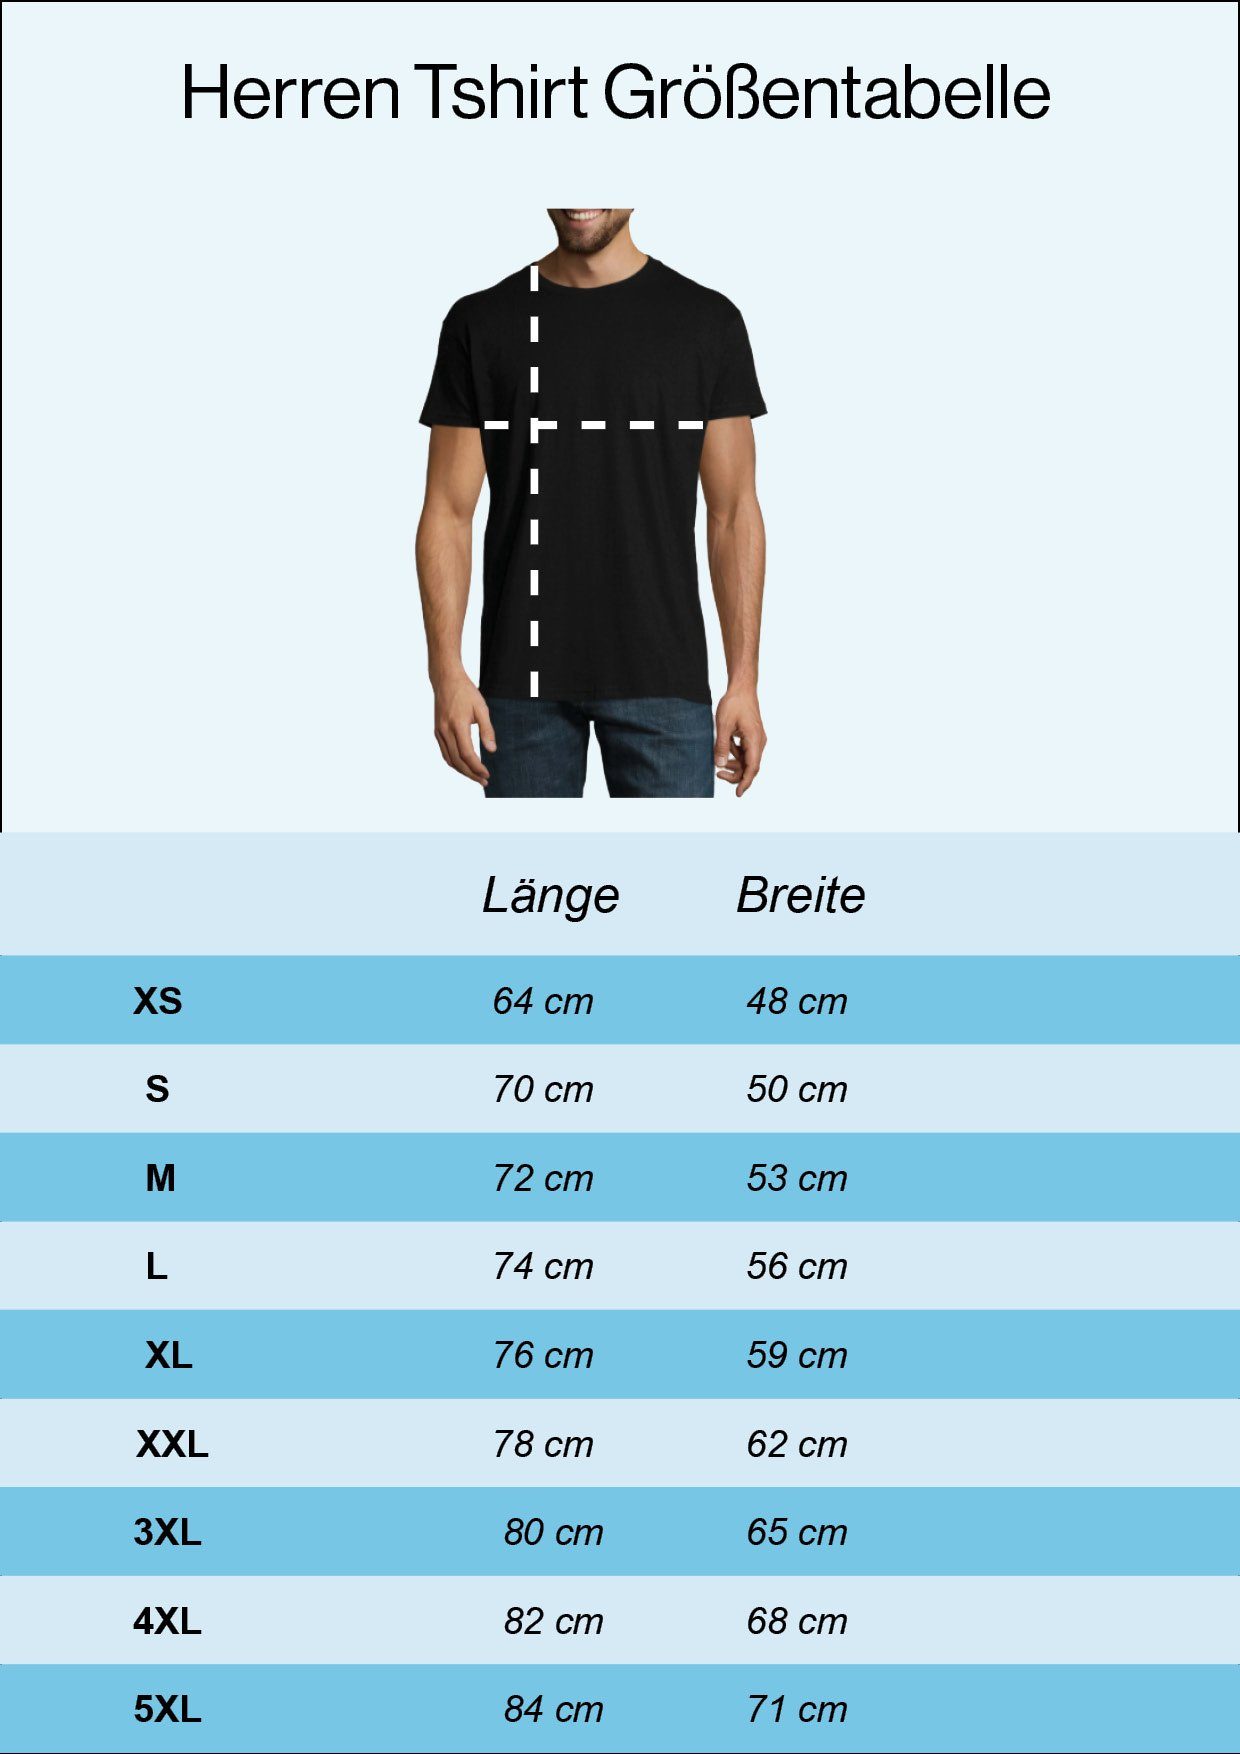 Youth Designz T-Shirt Burgund Gaming Evolution mit Gaming lustigem Motiv Herren Shirt